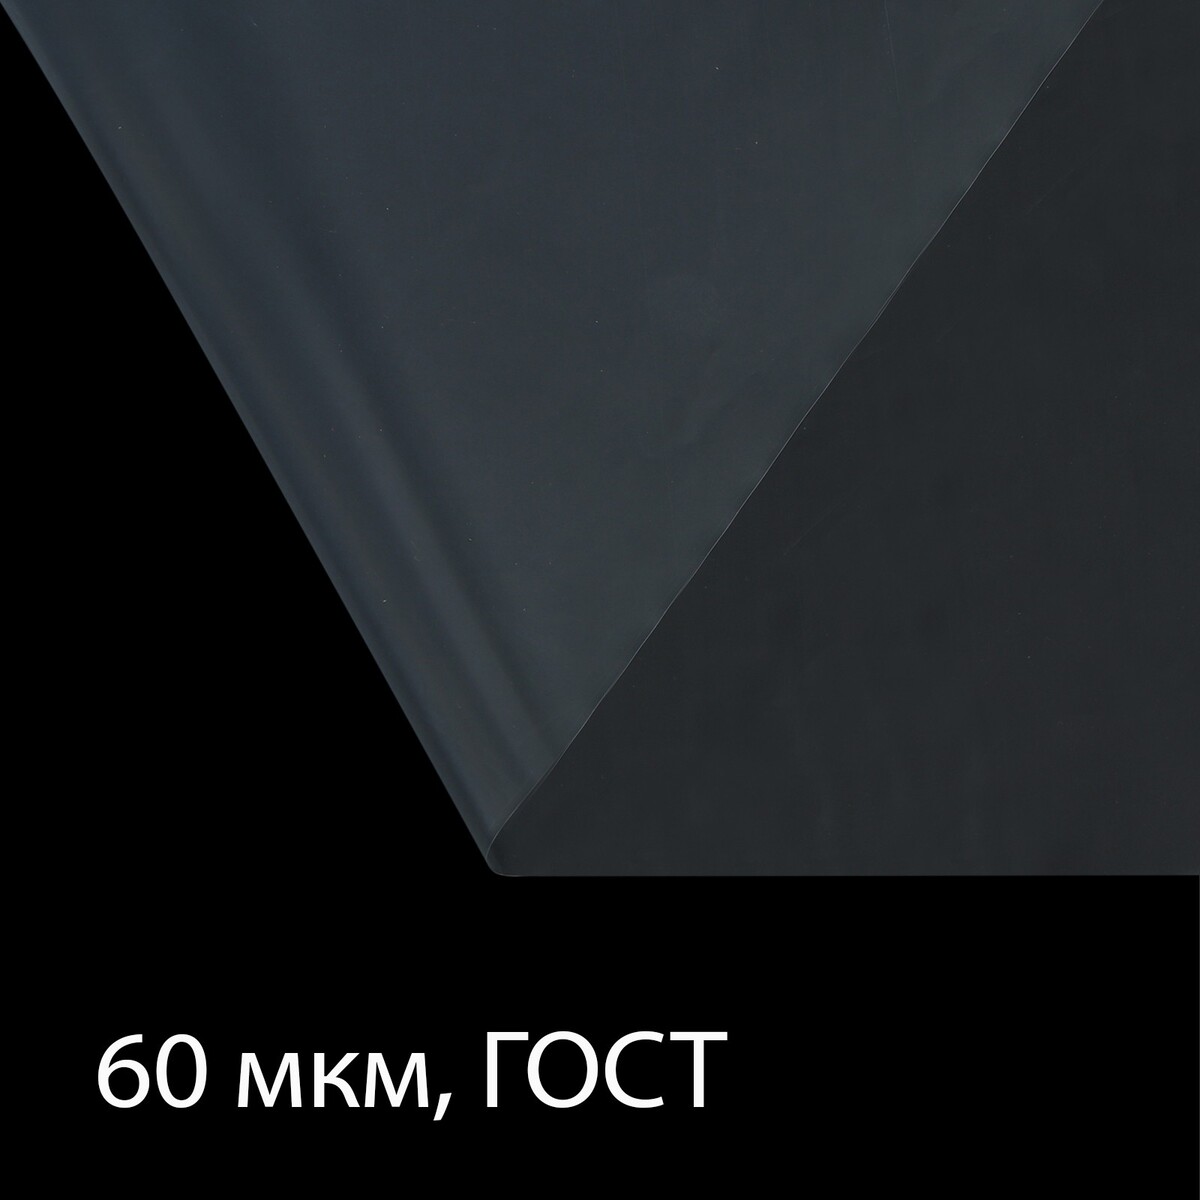 Пленка полиэтиленовая 60 мкм, прозрачная, длина 10 м, ширина 3 м, рукав (1.5 м × 2), гост 10354-82 пленка полиэтиленовая толщина 120 мкм прозрачная 5 × 3 м рукав 1 5 м × 2 гост 10354 82